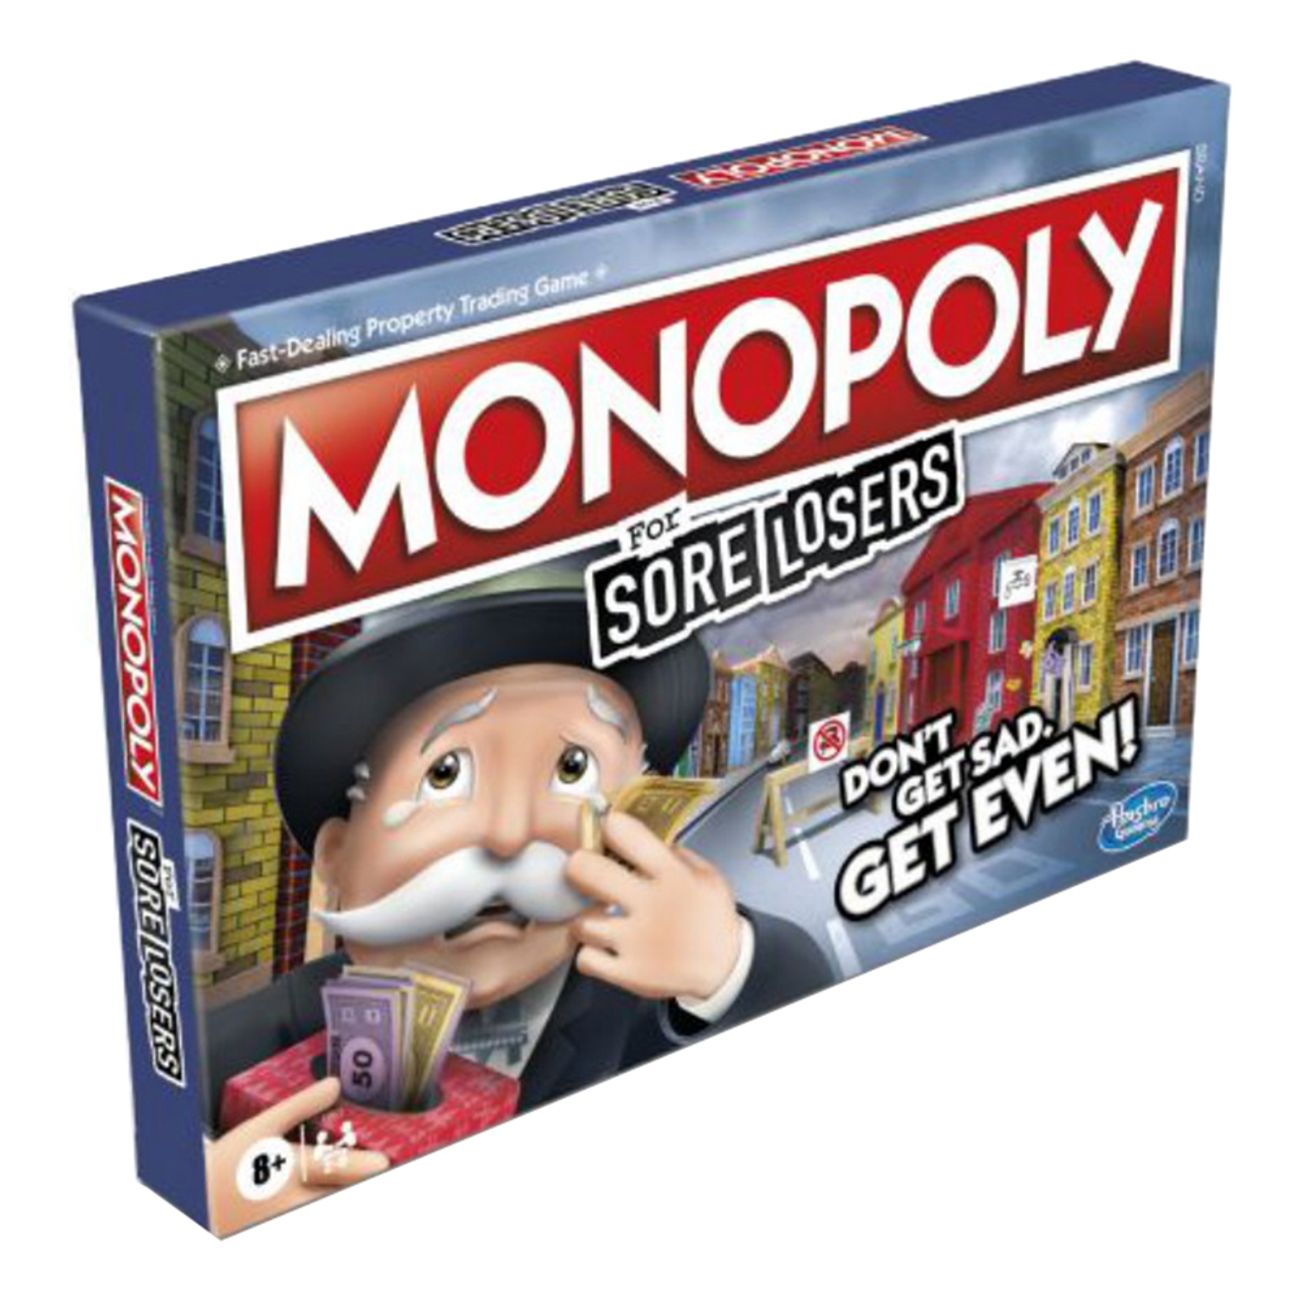 monopol-sore-losers-edition-1